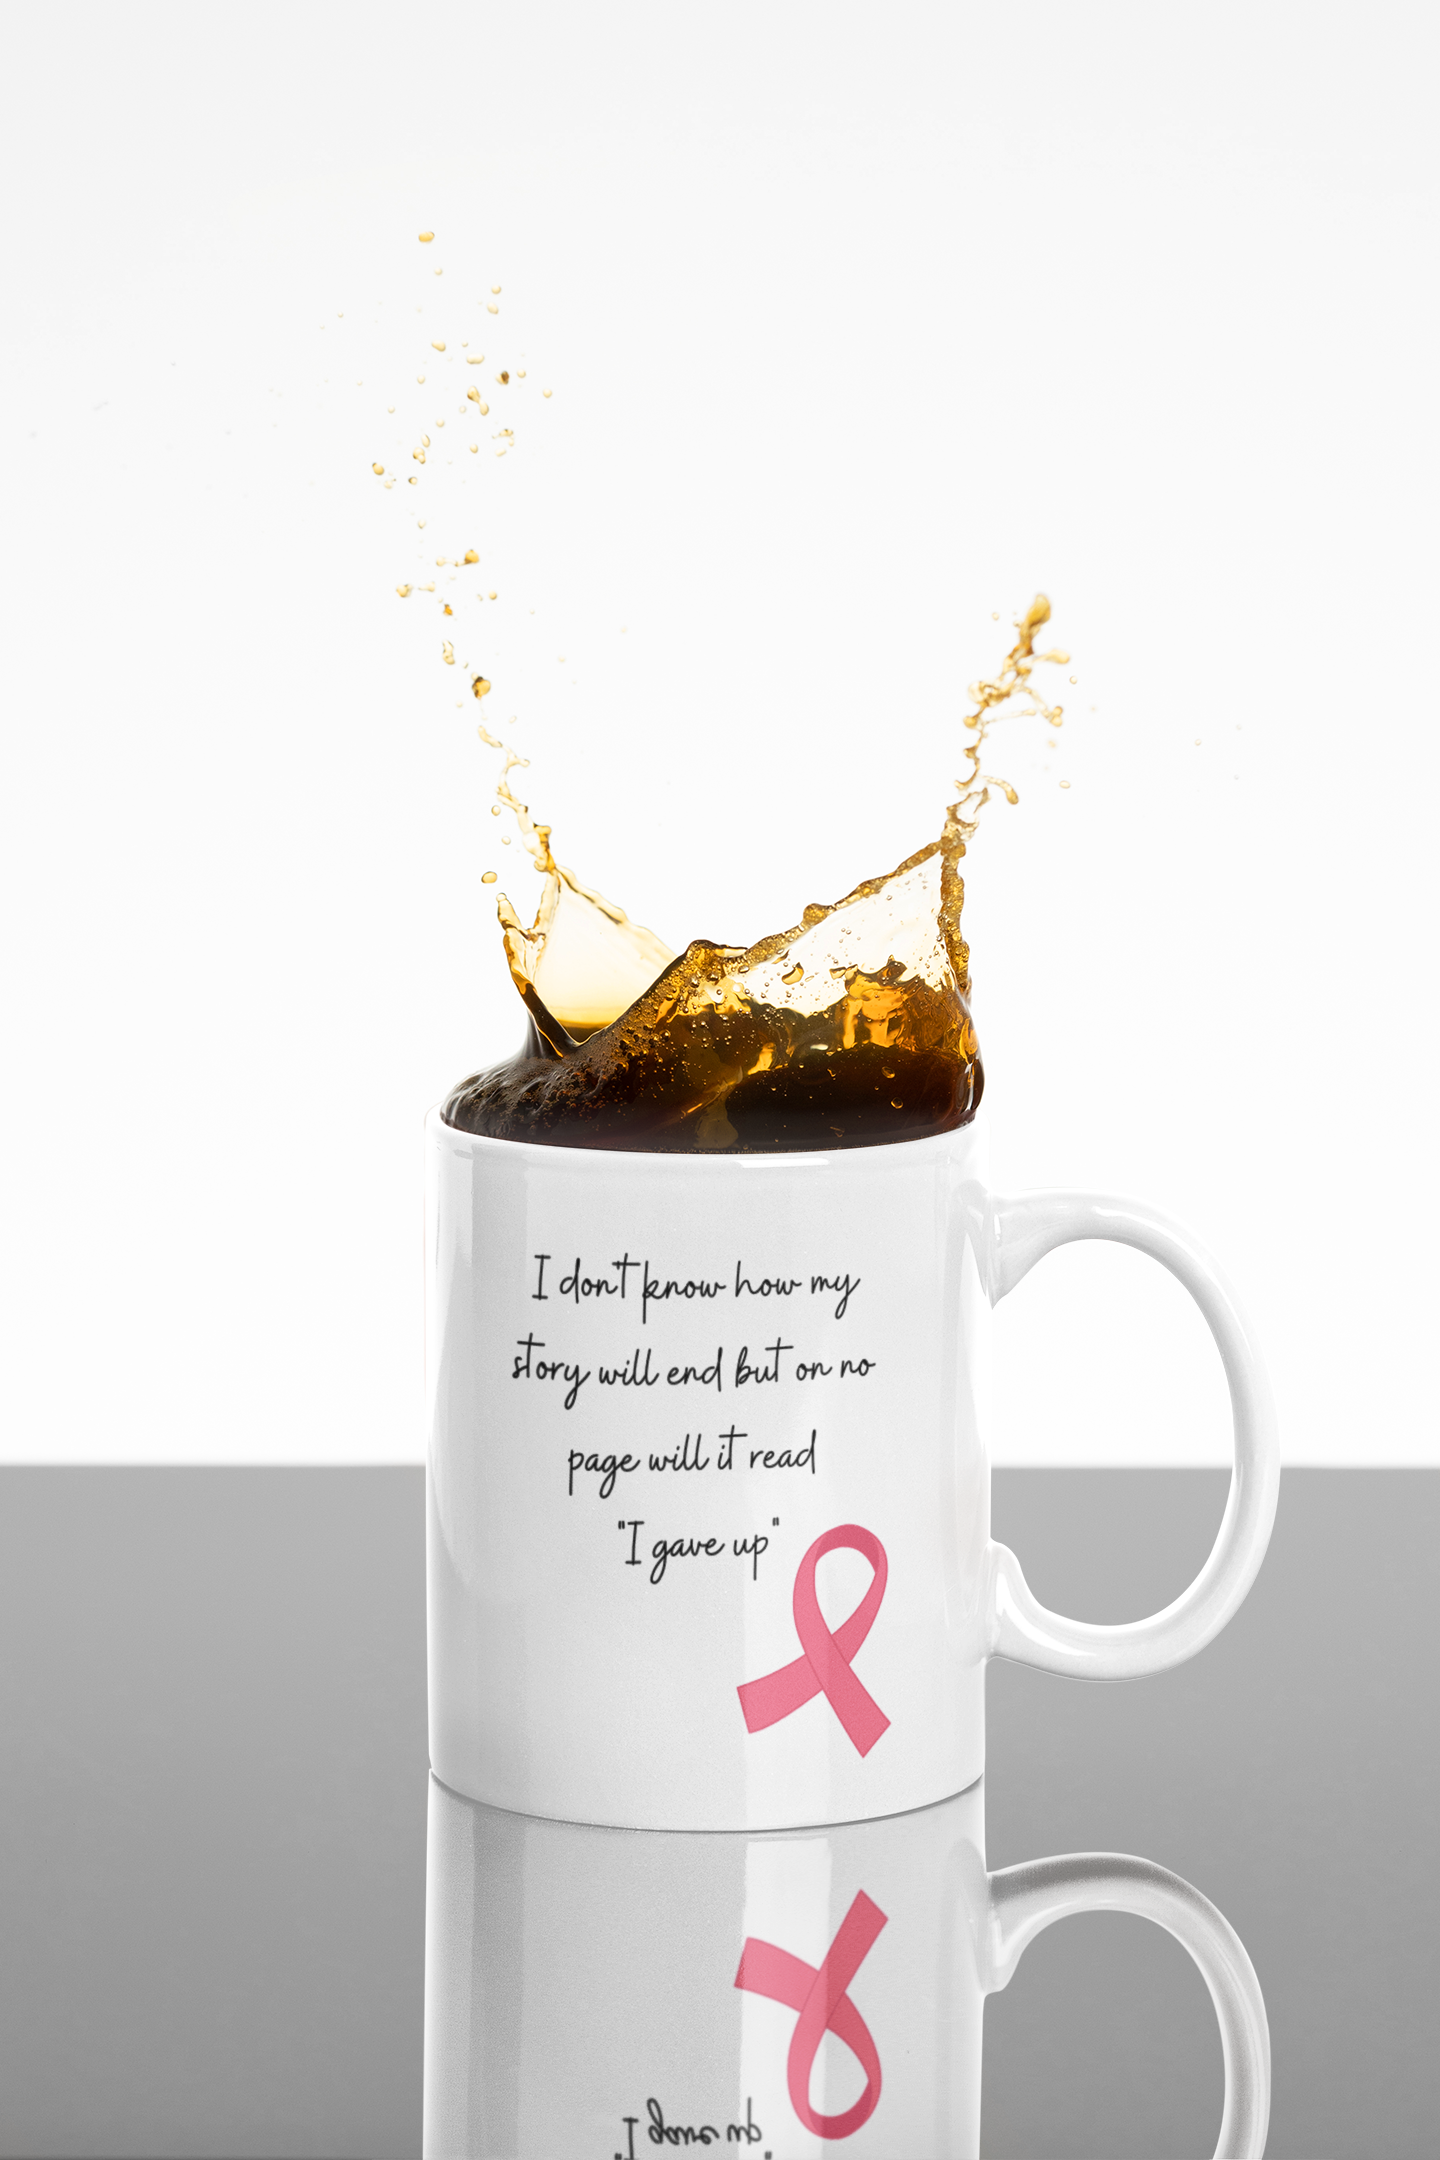 Cancer Awareness Mugs